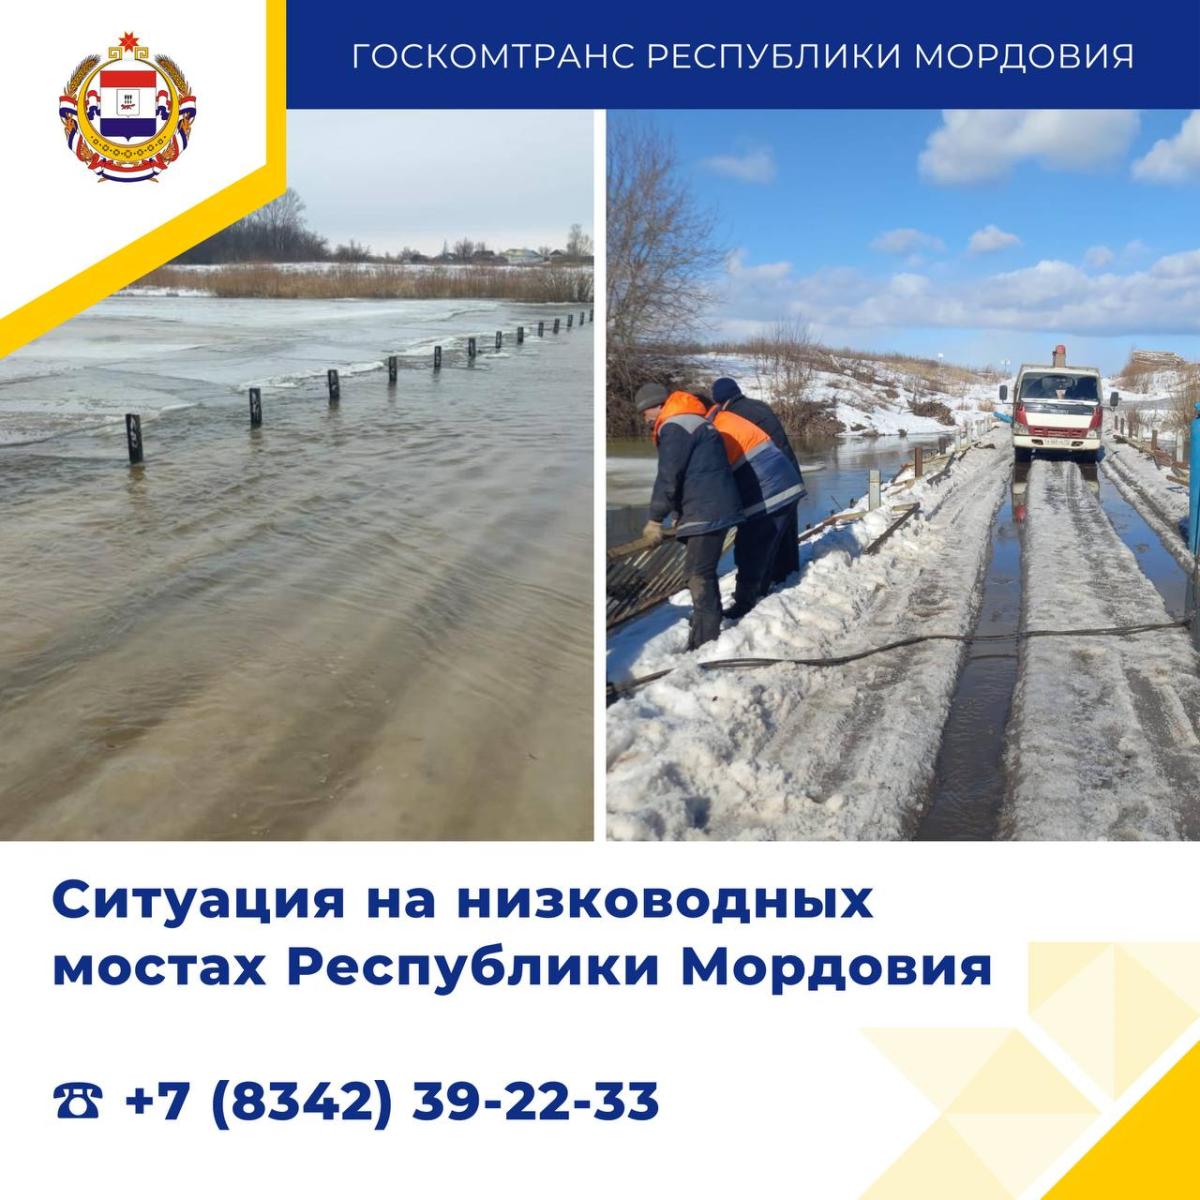 13 мостов затоплены в Мордовии